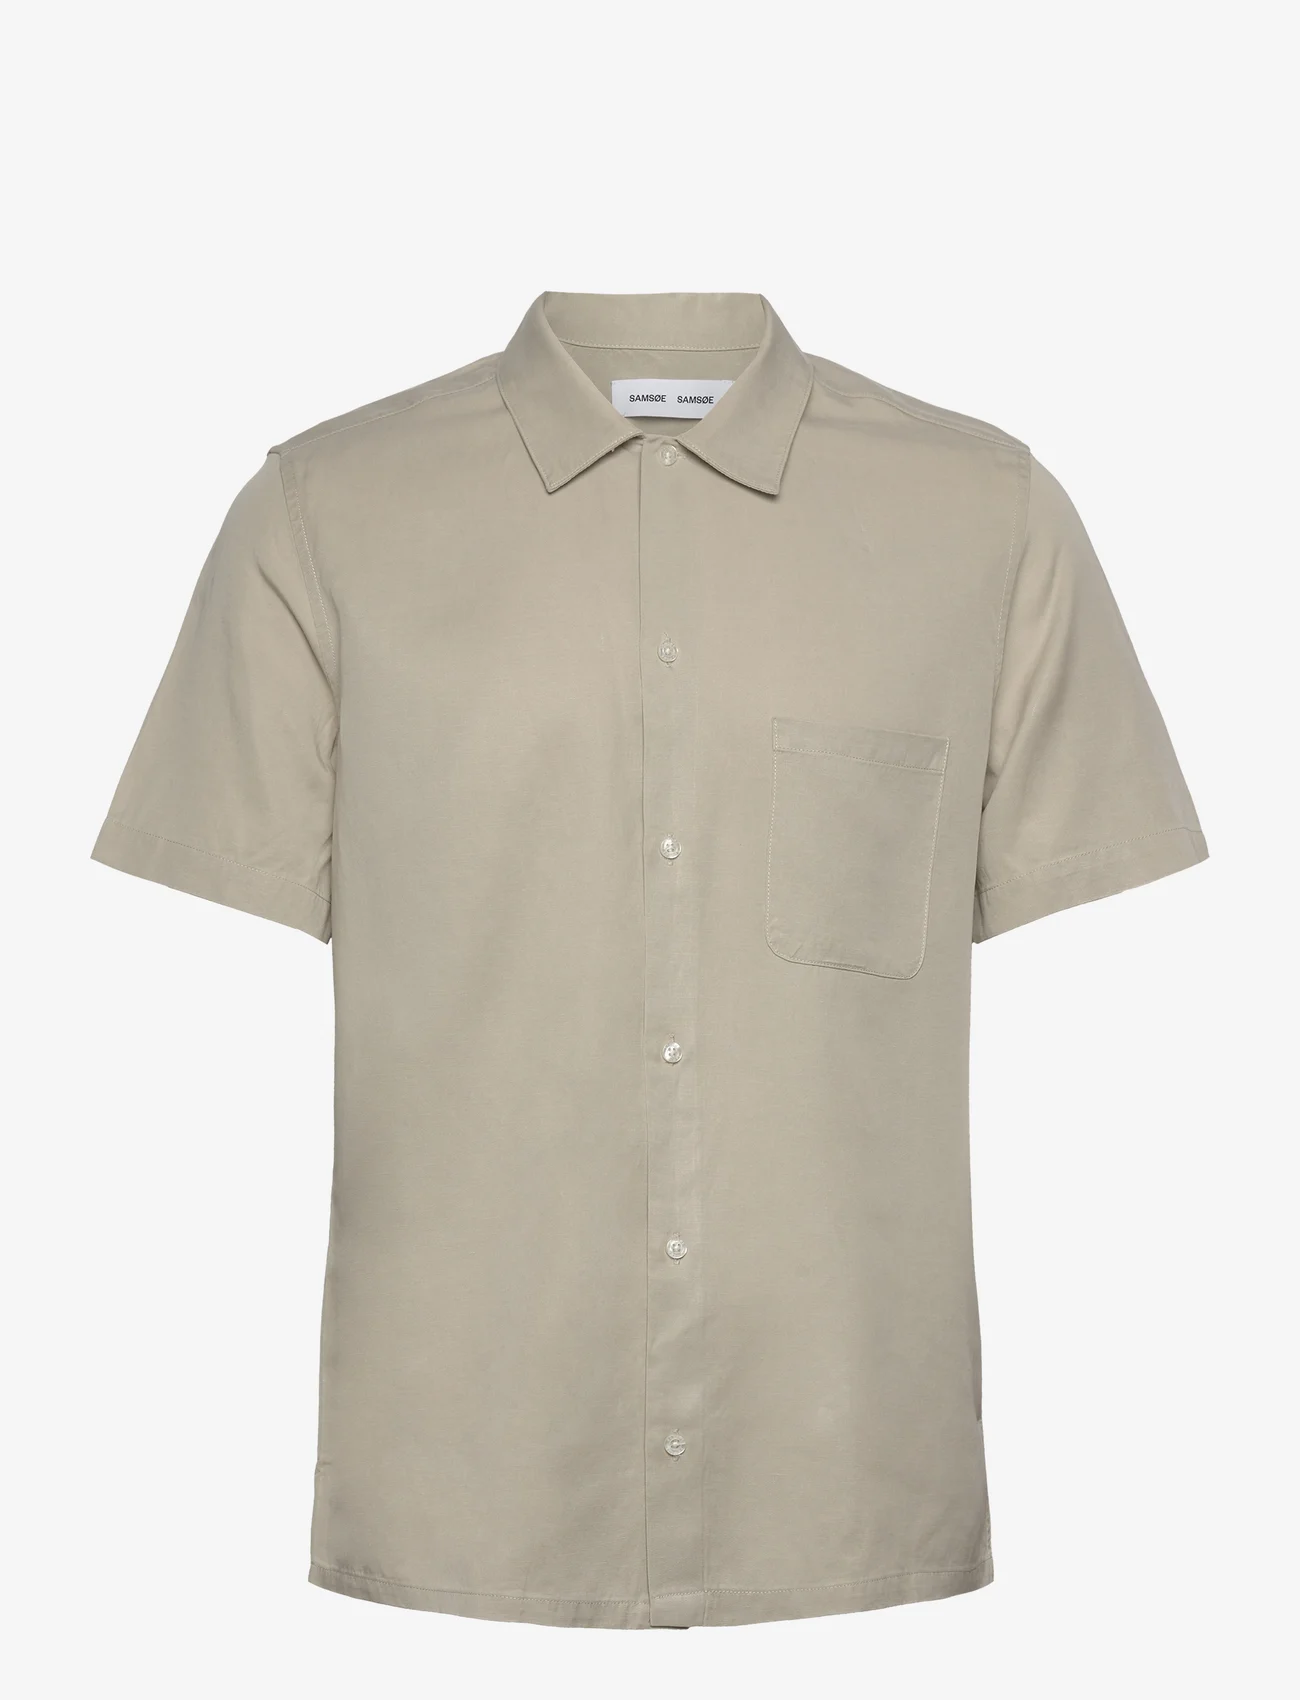 Samsøe Samsøe - Avan JF shirt 14333 - kortermede t-skjorter - agate gray - 0